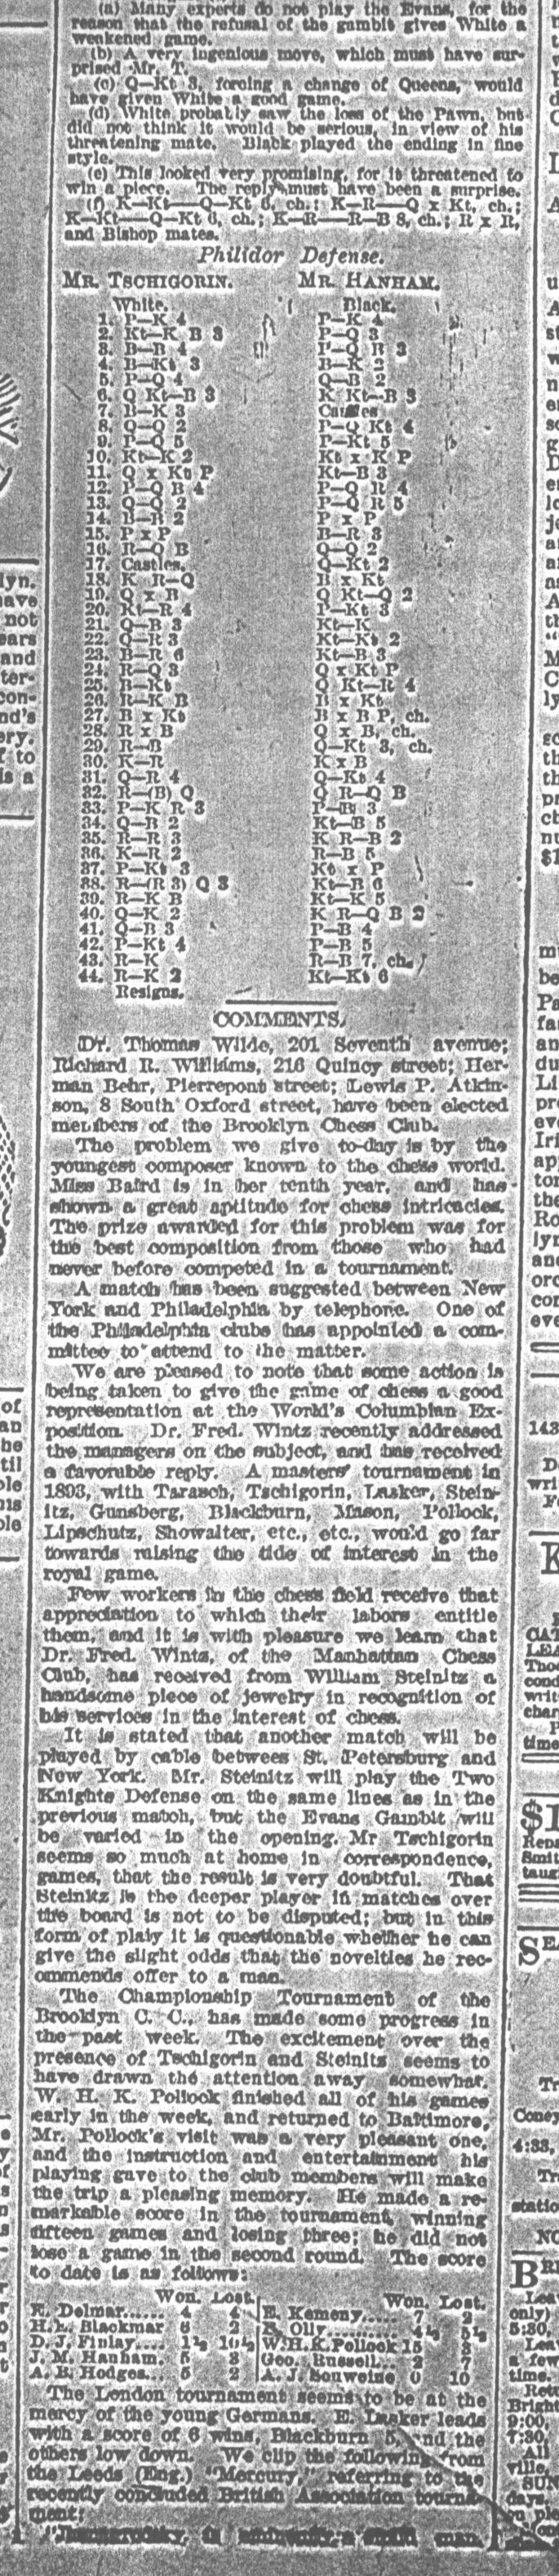 1892.04.09-02 Brooklyn Daily Standard-Union.jpg